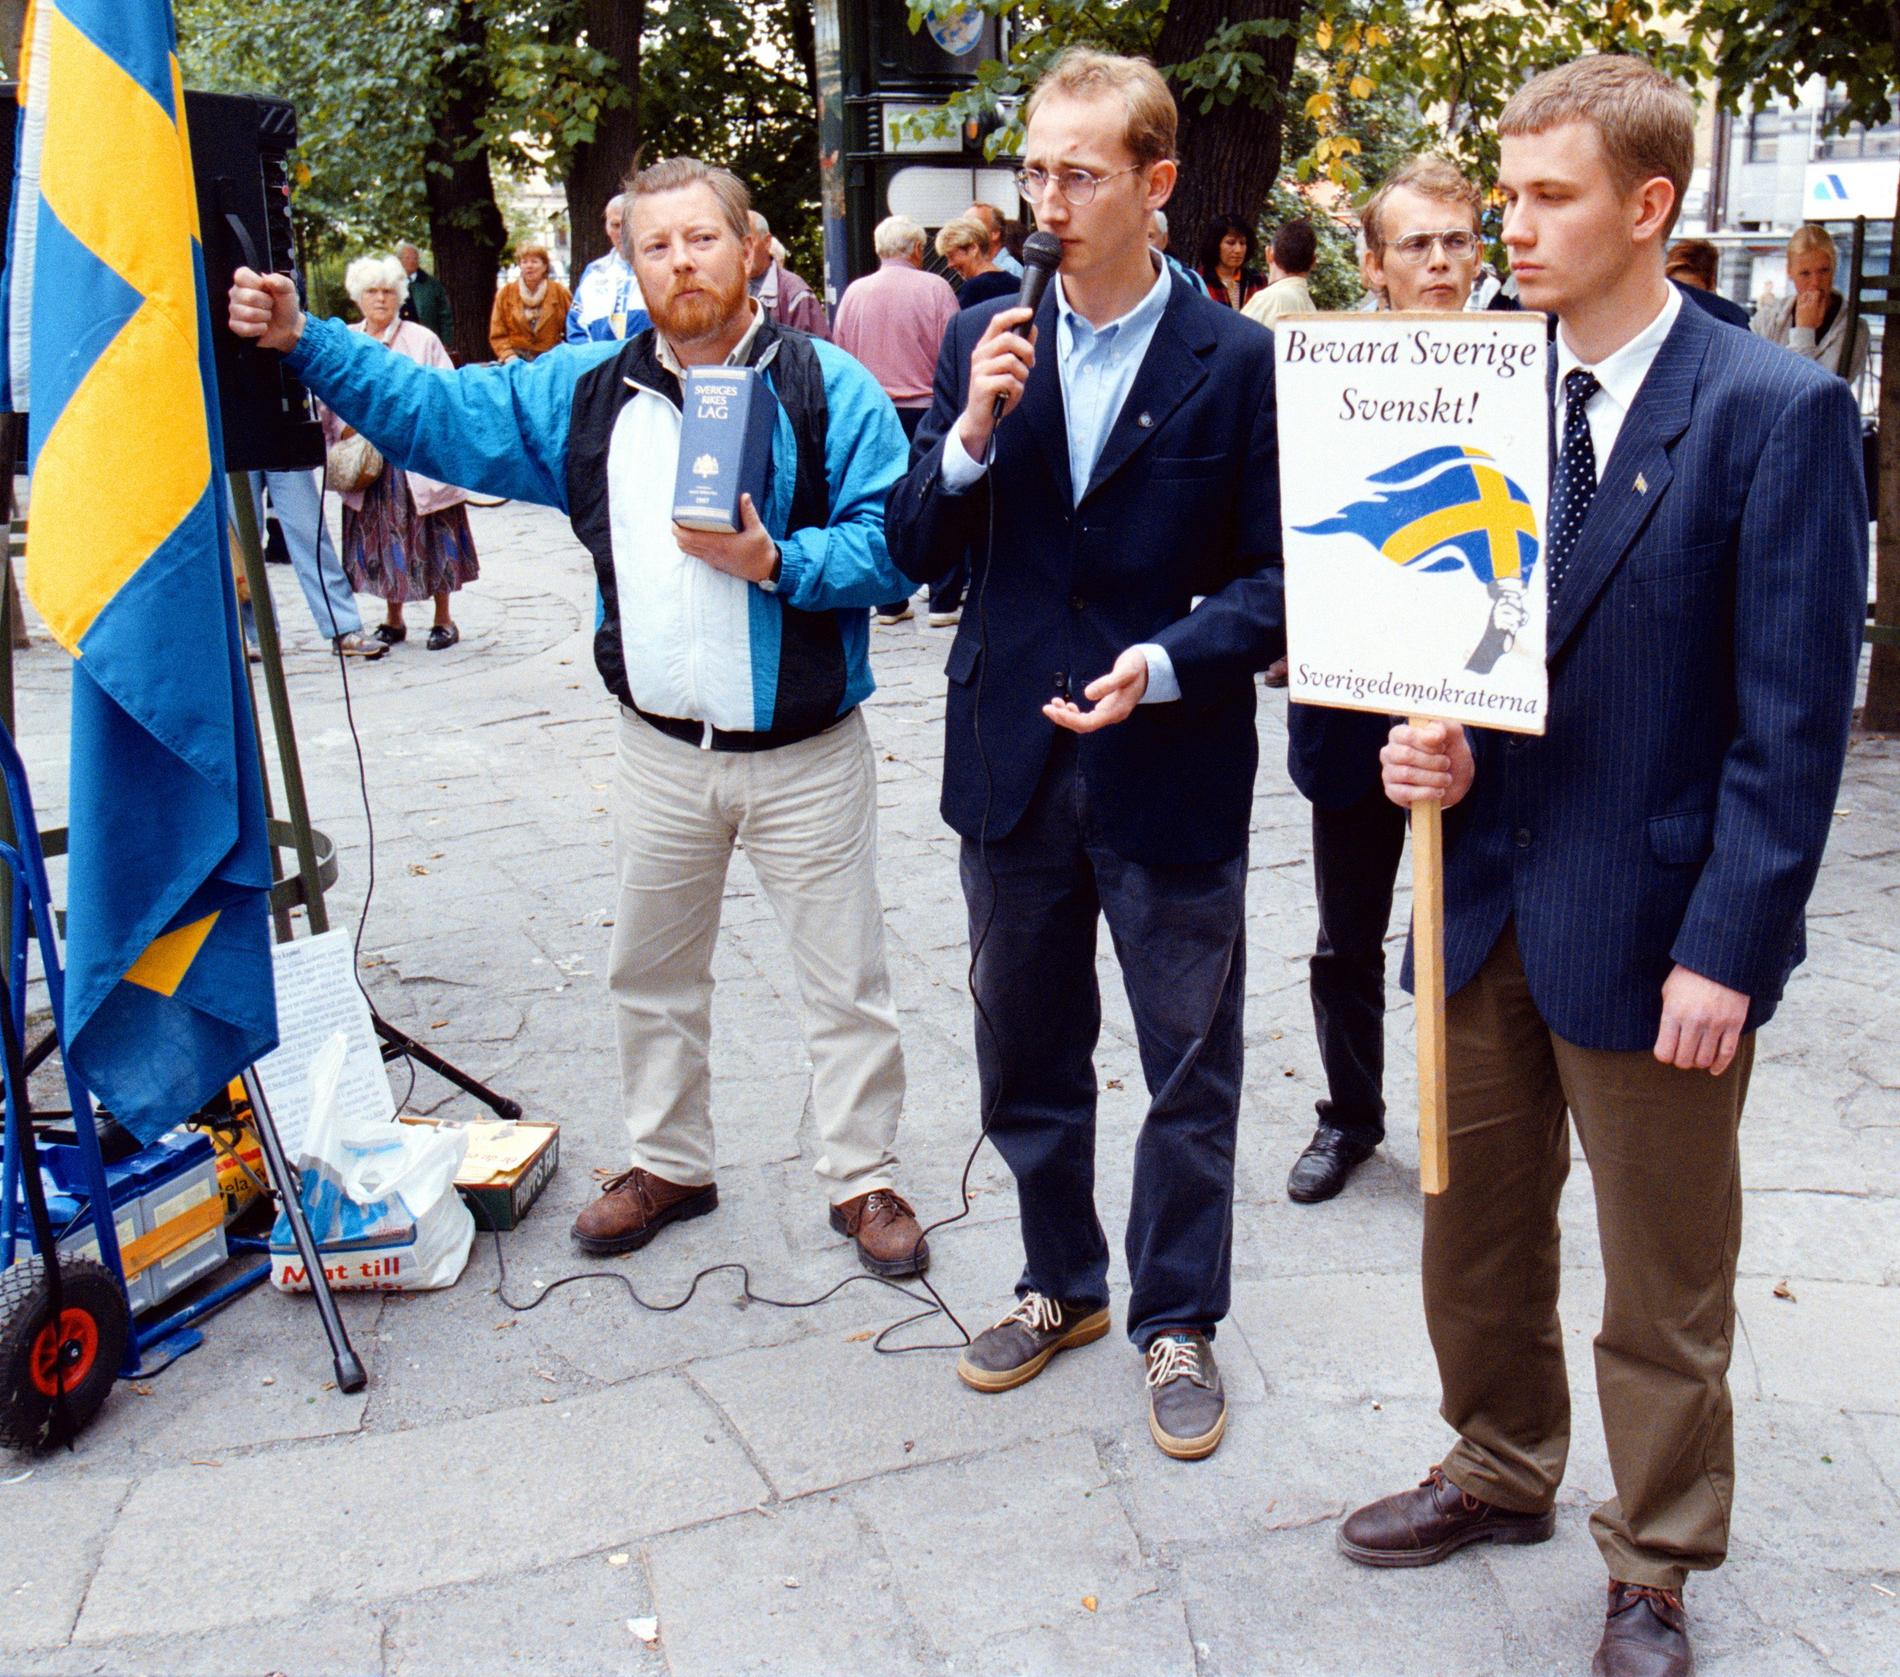 Sverigedemokraterna håller valmöte i Brunnsparken i Göteborg 1998. En av deltagarna håller upp en lagbok och en annan en skylt med texten ”Bevara Sverige svenskt”. 